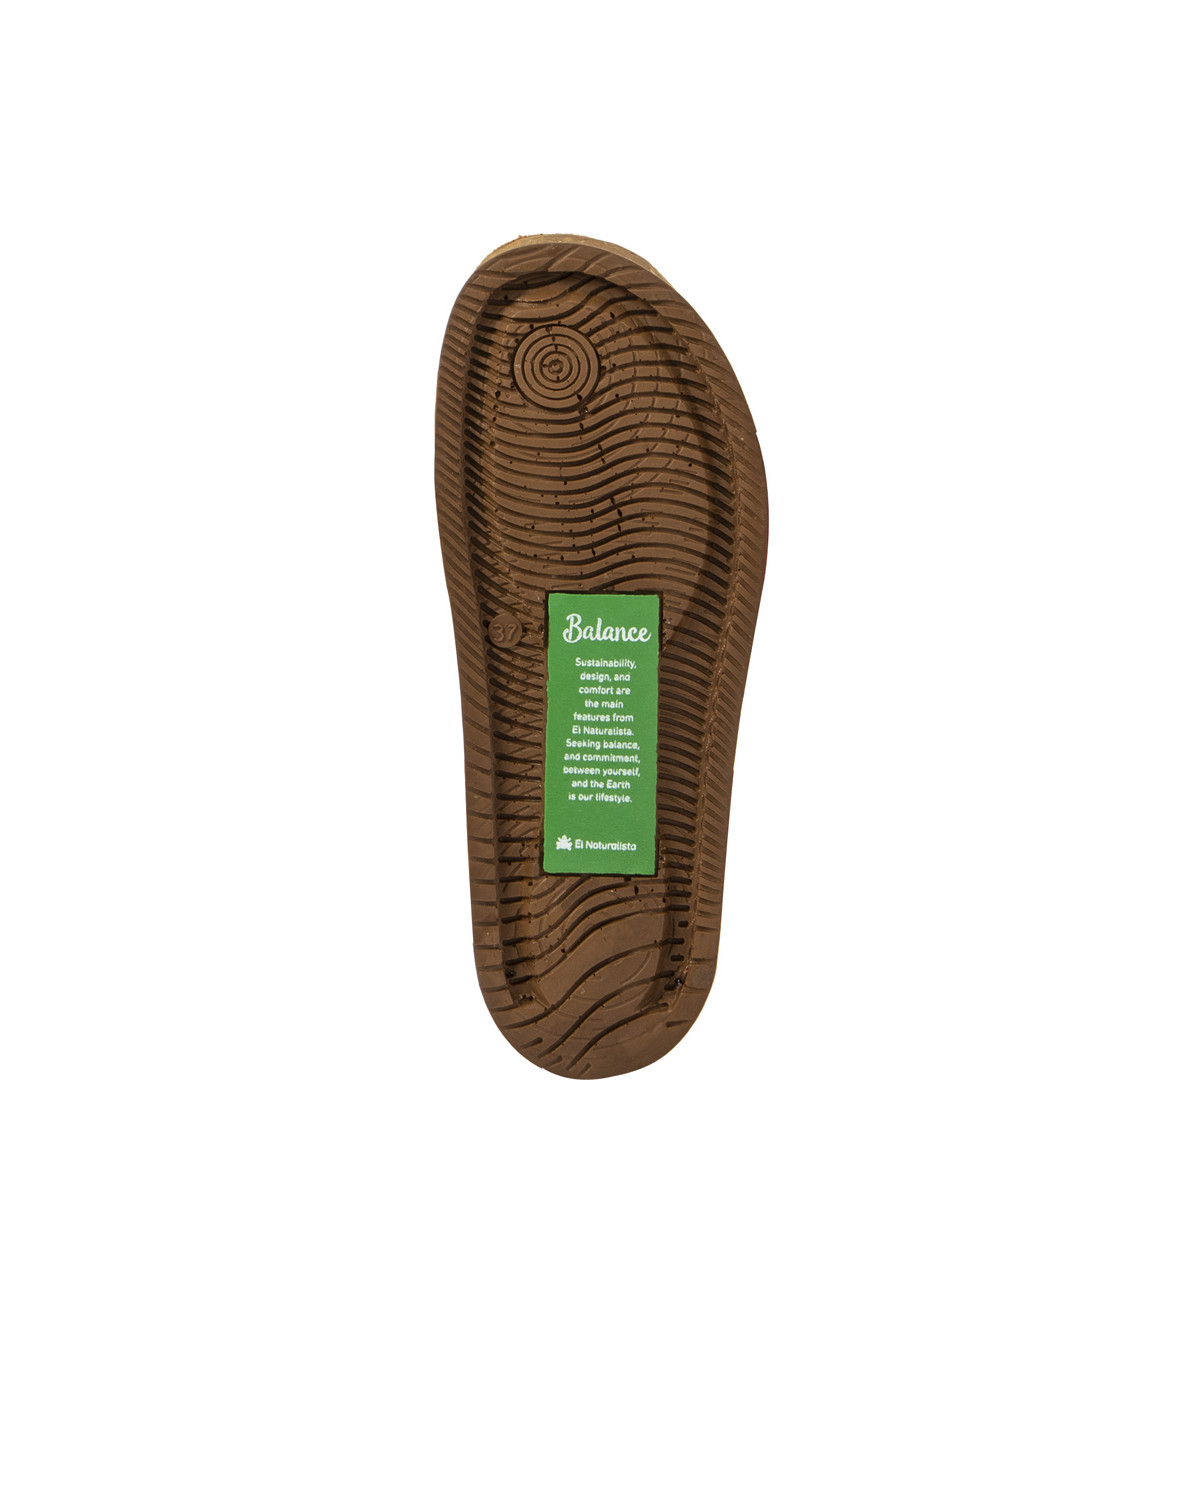 Sandales confortables plates en cuir ultra confort - Jaune - El naturalista